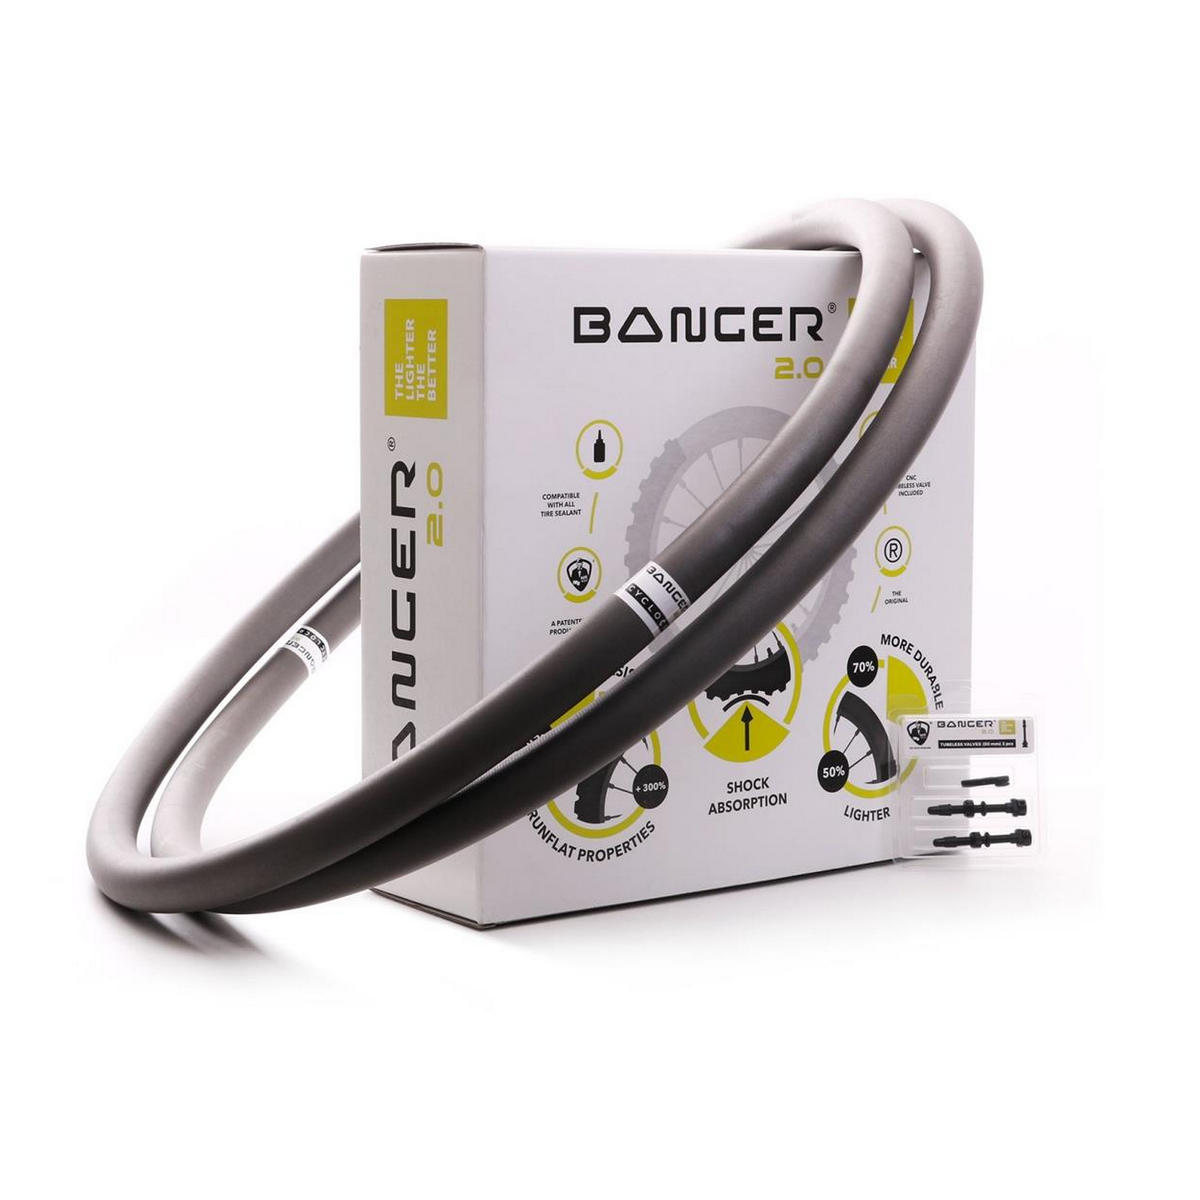 Par banger 2.0 cyclocross / cascalho para pneus de 35 a 40